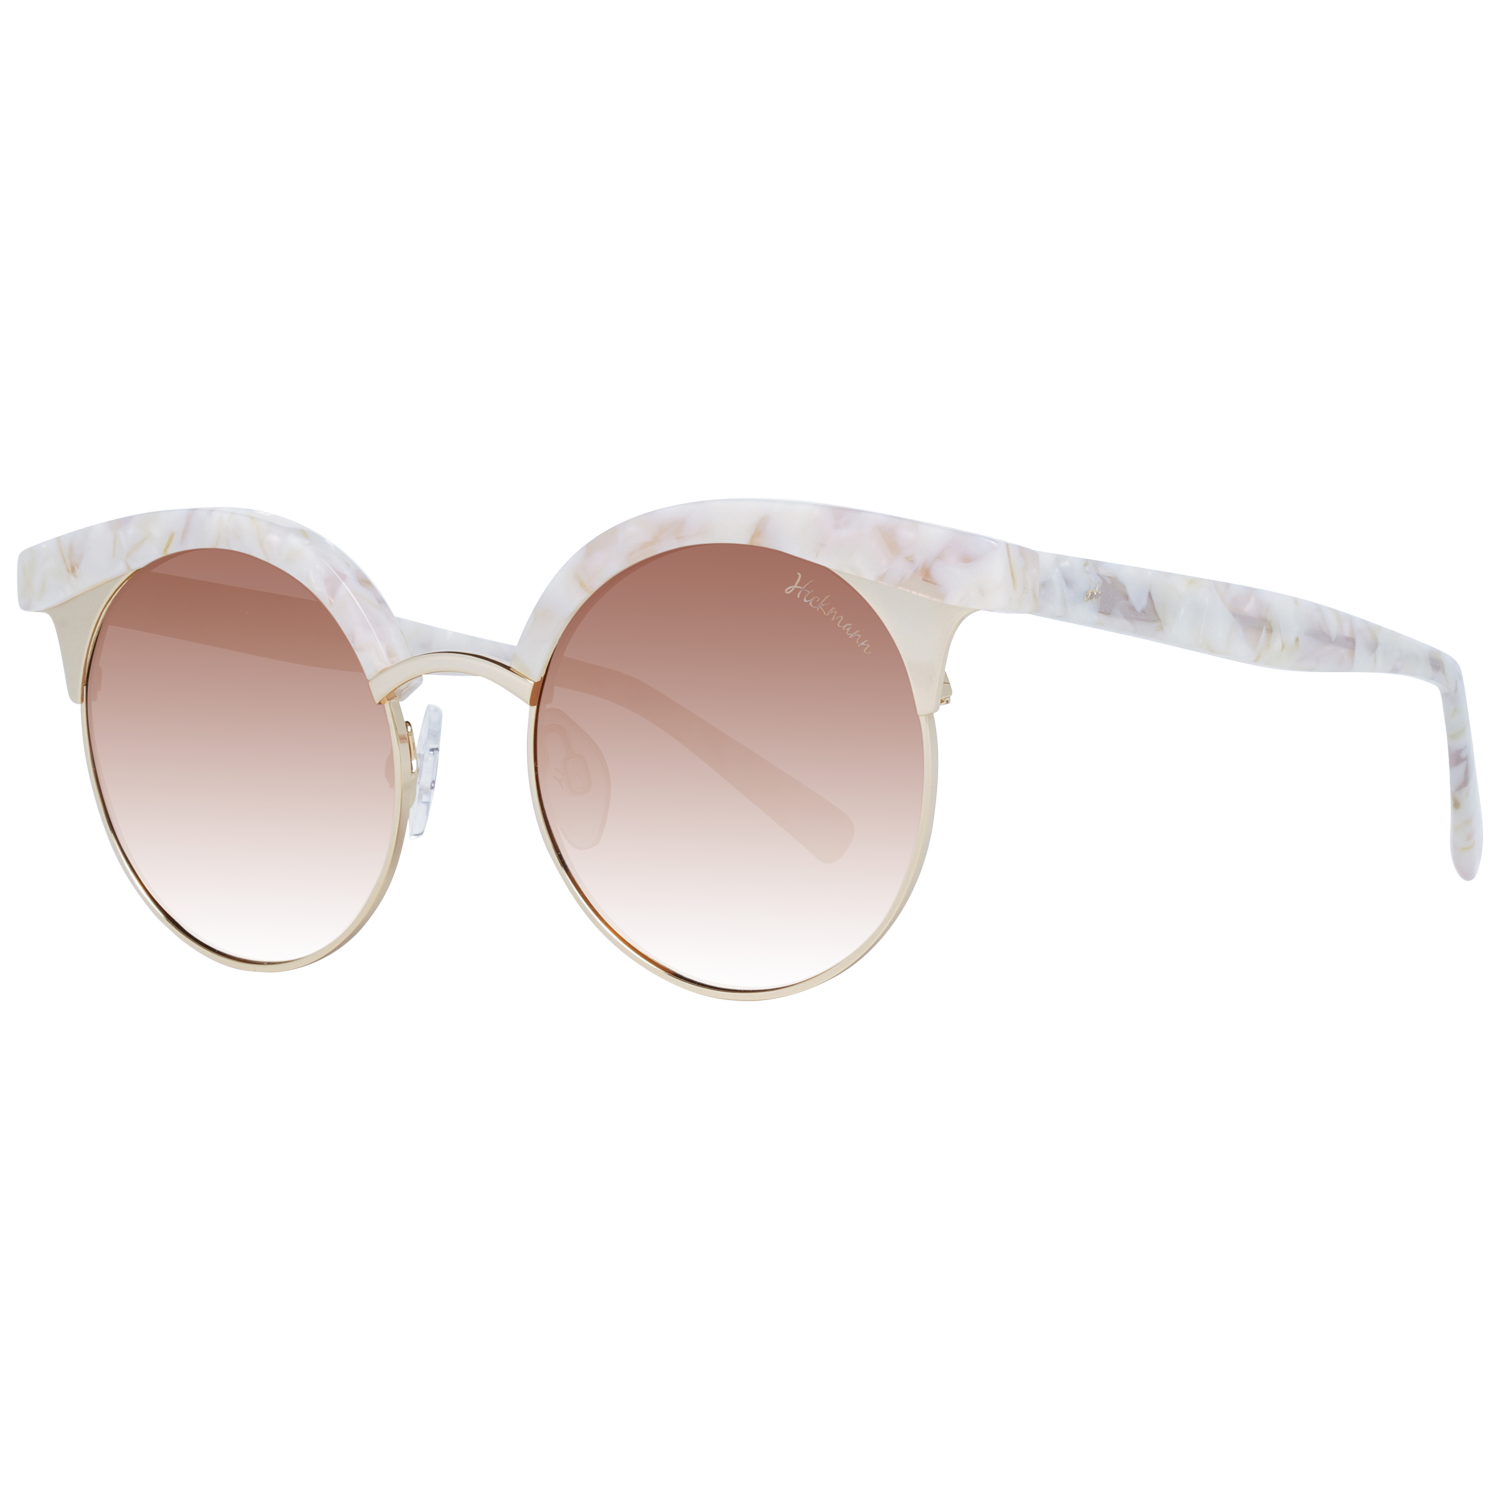 Dámské sluneční brýle Ana Hickmann HI3050 G22 52